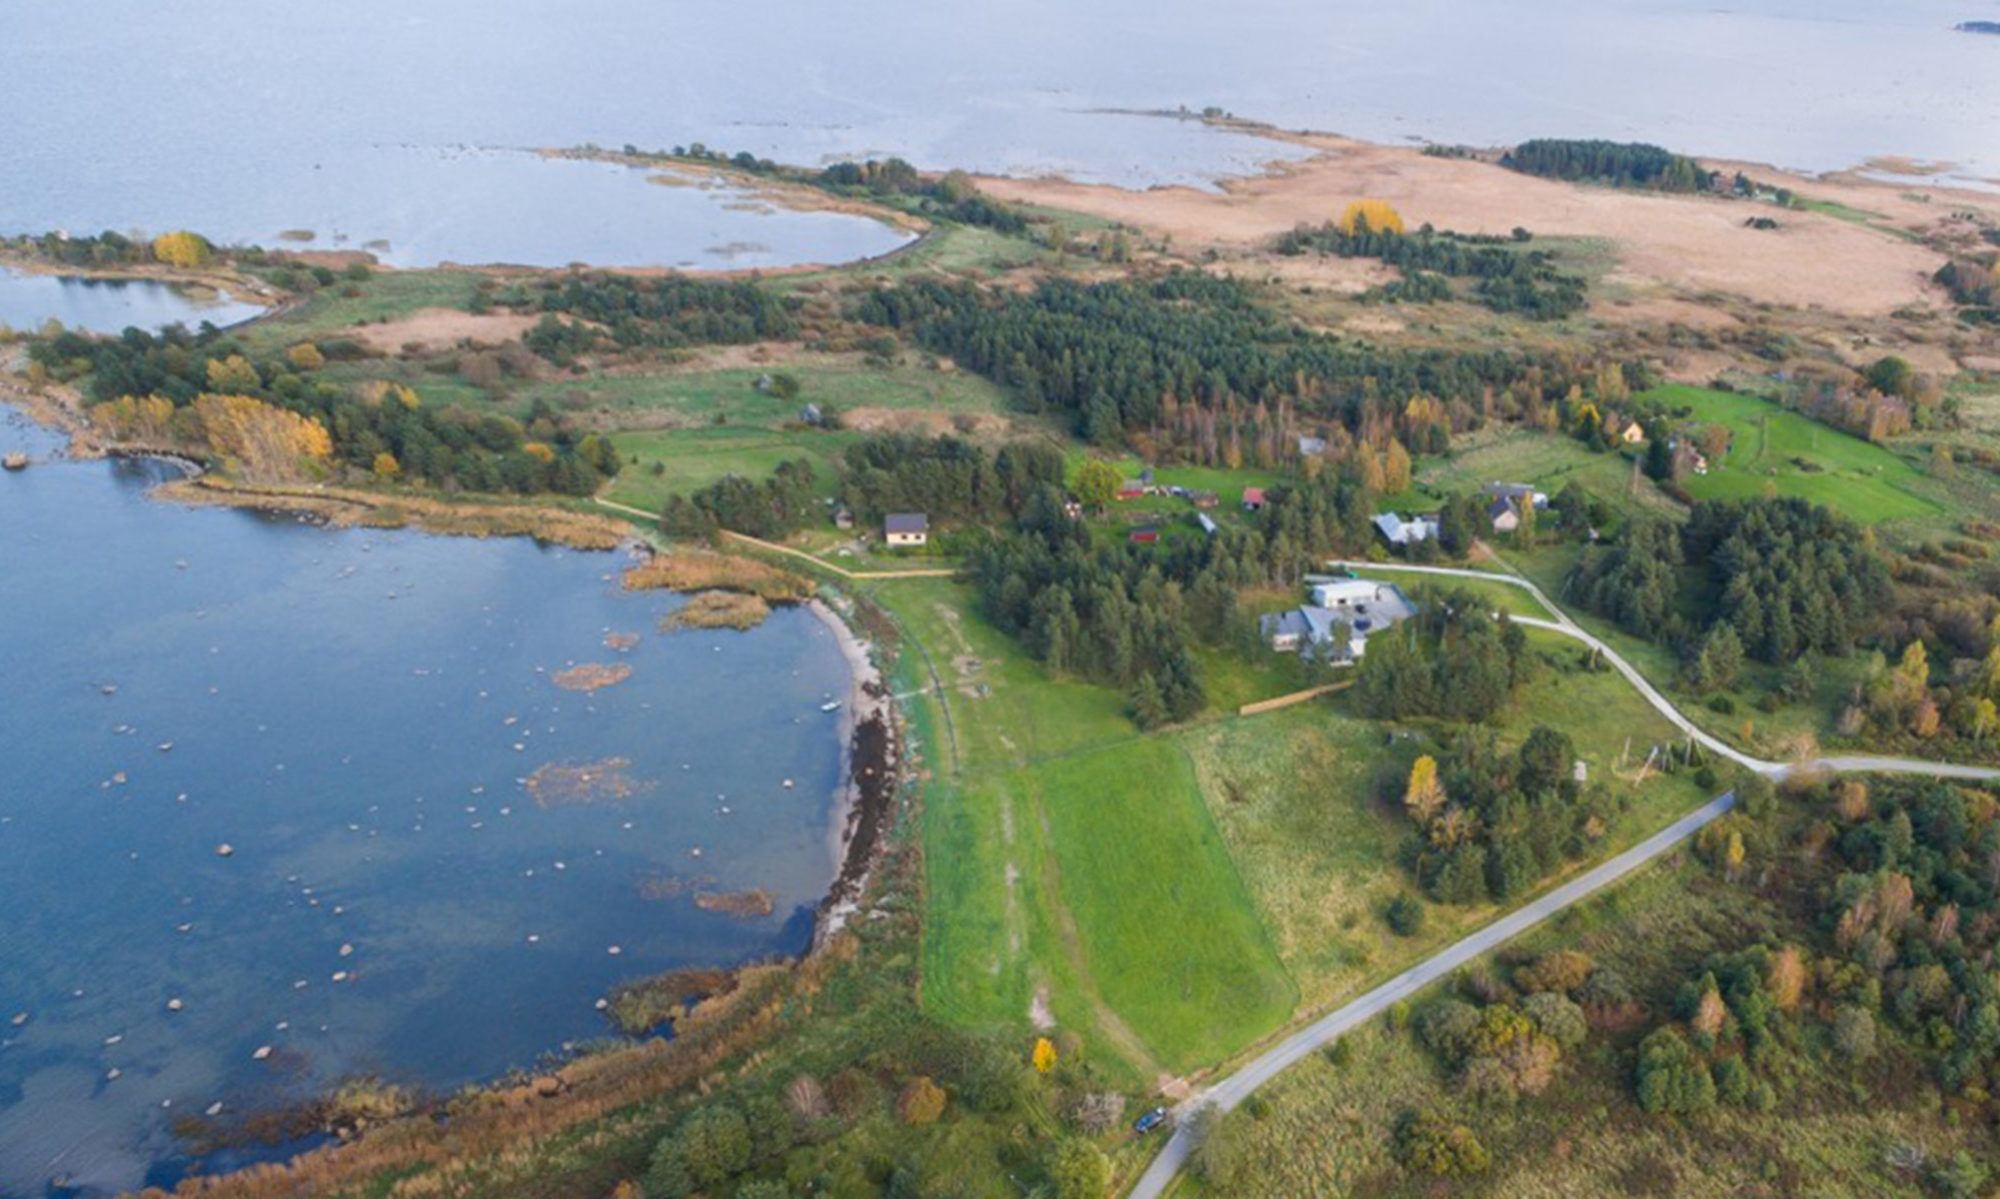 Asub Soome lahe rannikul. Mahu küla on esmakordselt mainitud Taani hindamisraamatus 1241. Seal on sadam. Külast lääne poole jääb Mahu soo. Mahu külas on sündinu